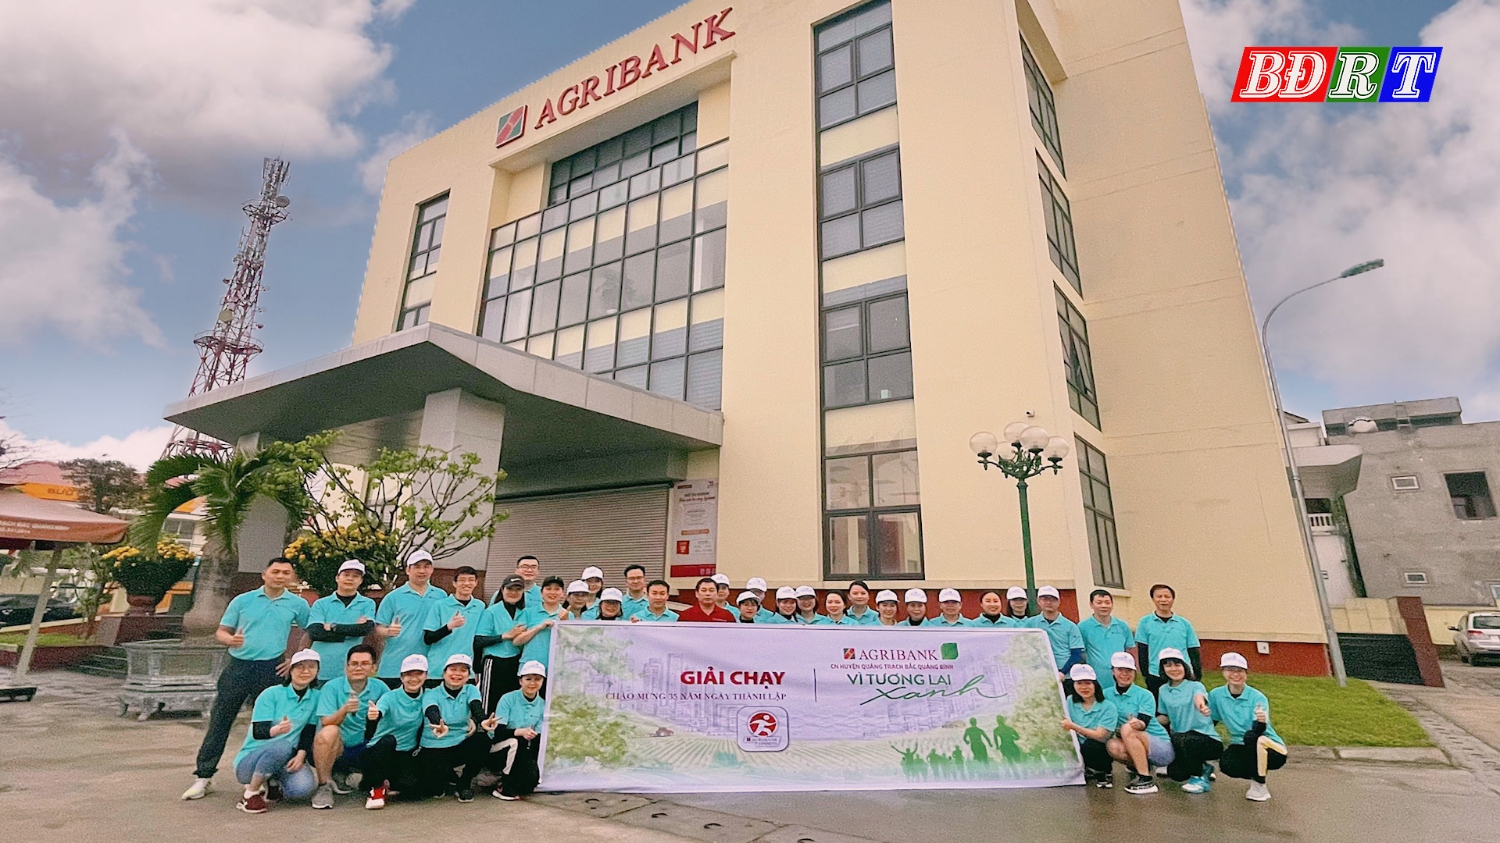 Agribank chi nhánh Quảng Trạch Bắc Quảng Bình phát động Giải chạy “Agribank Bắc Quảng Bình vì tương lai xanh”